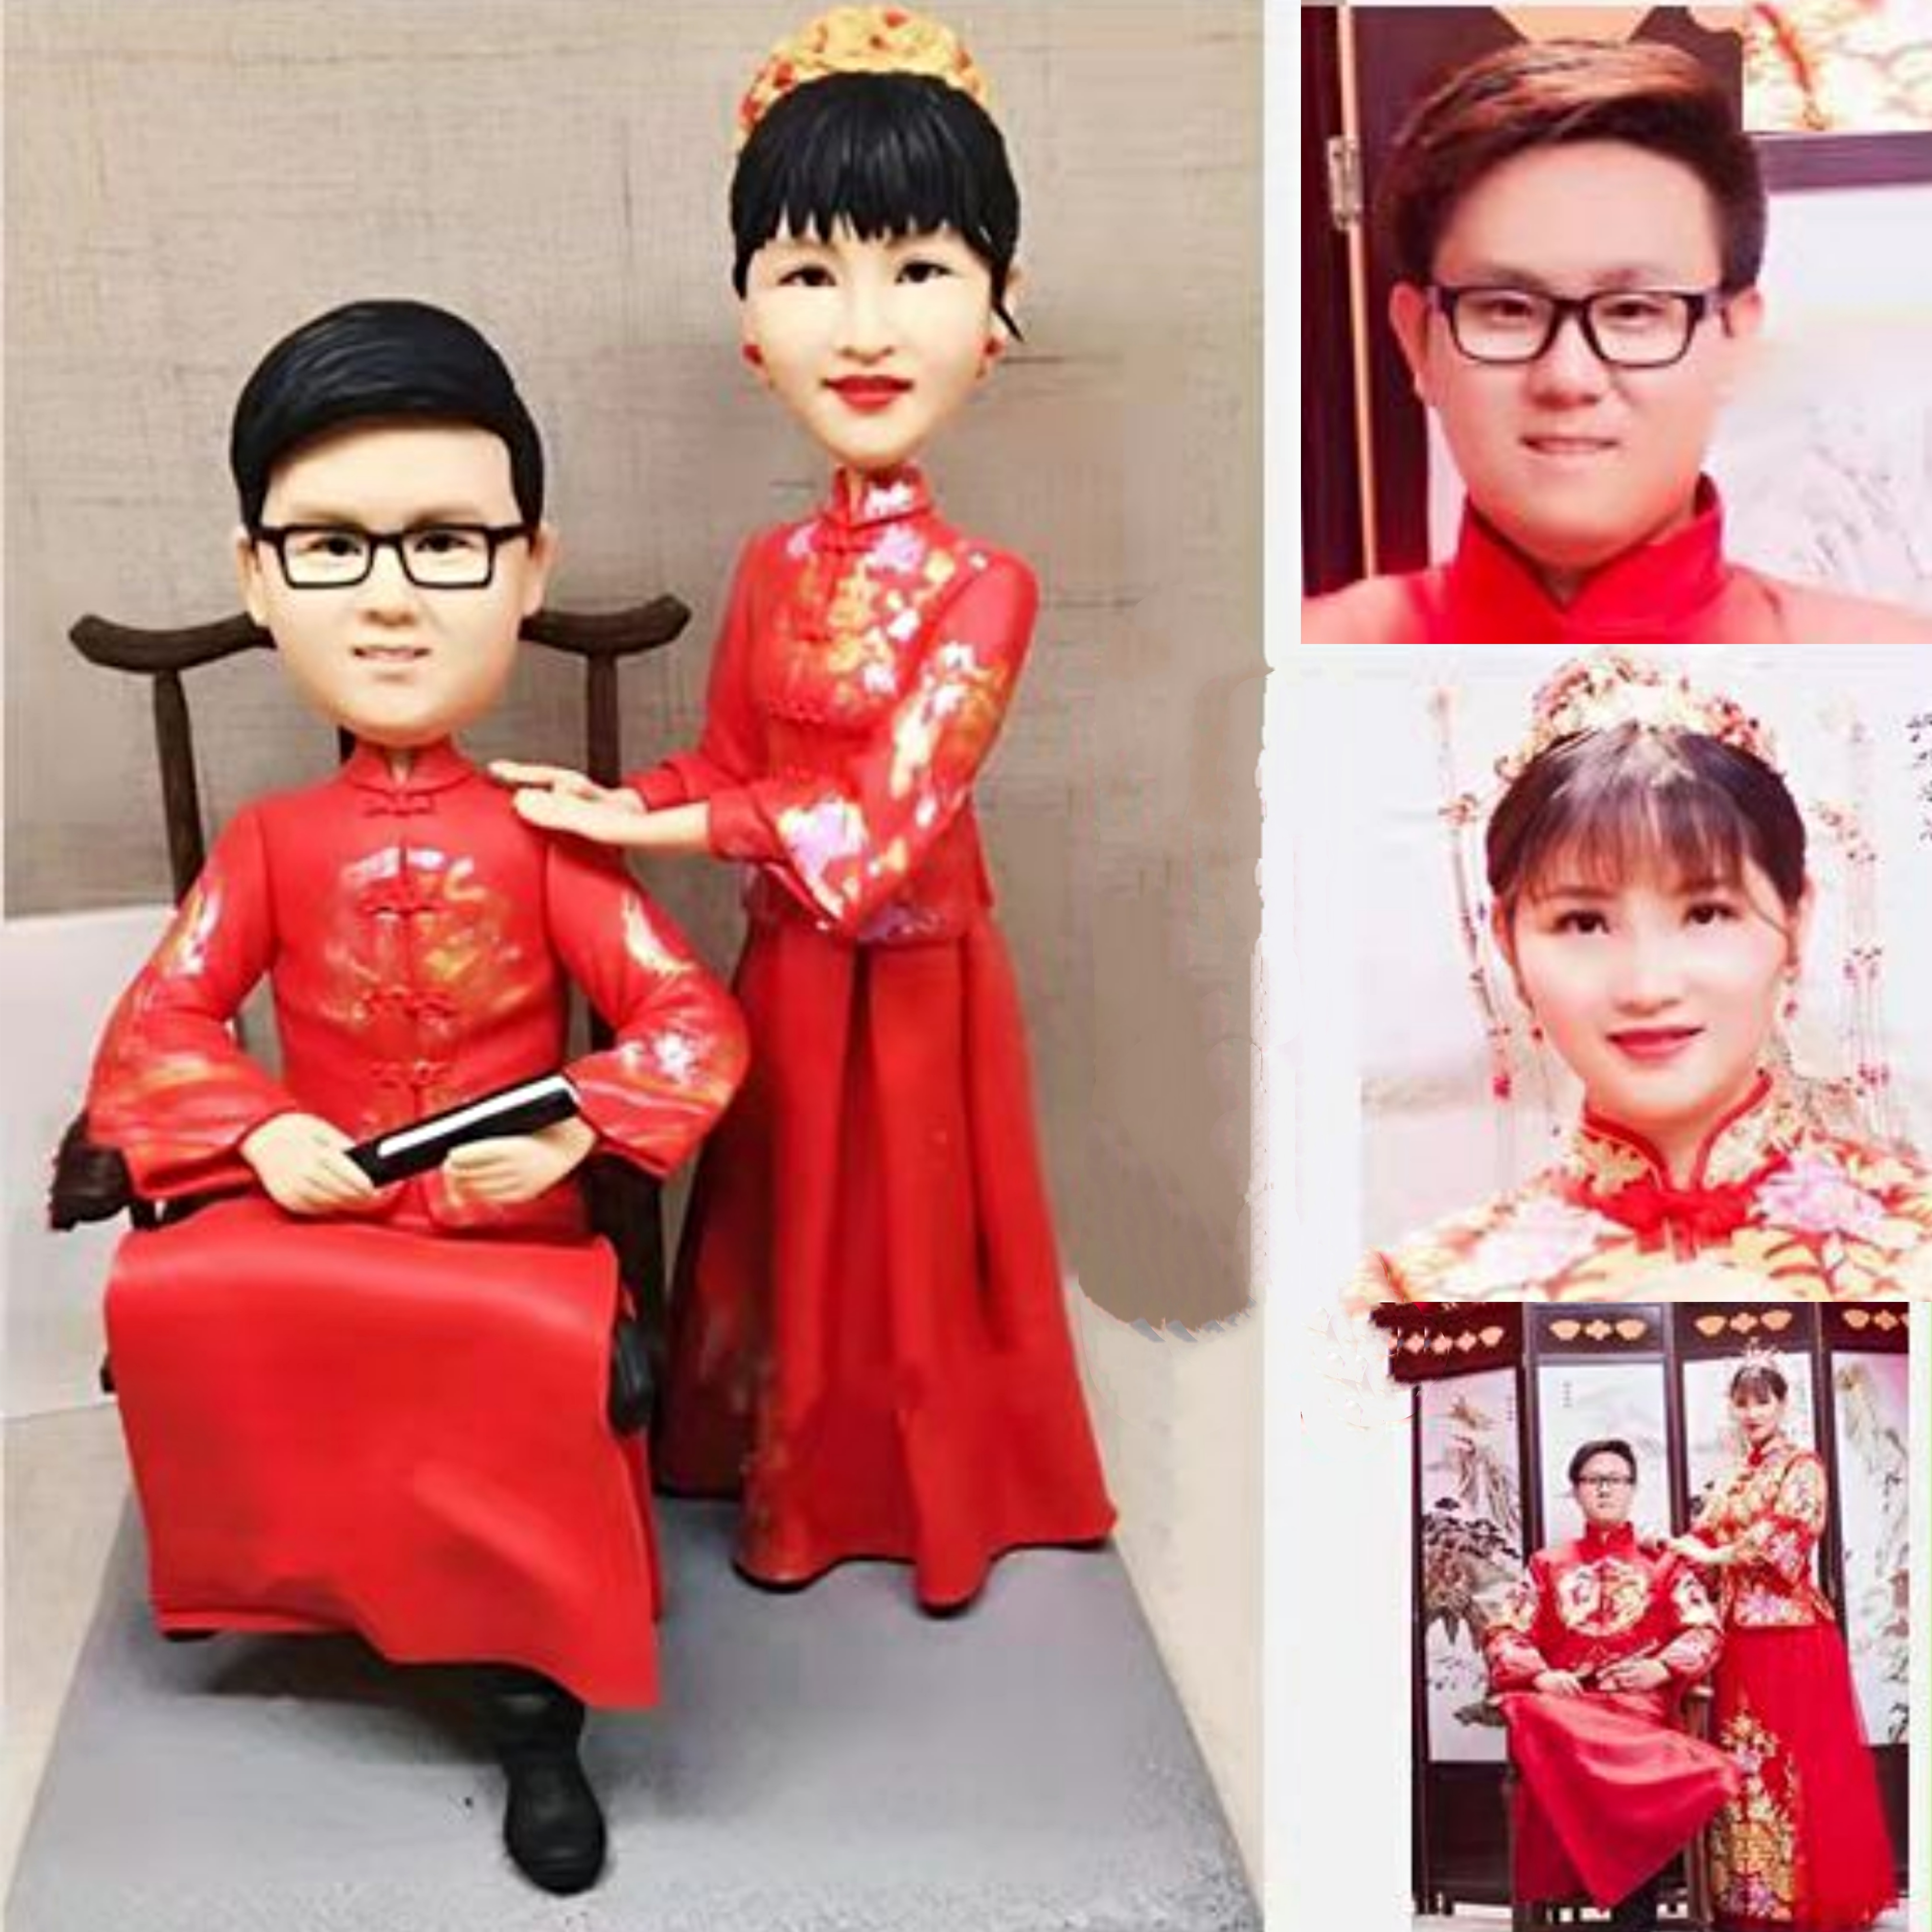 【オーダーメイド】3D肖像画似顔絵人形/結婚祝い記念日誕生日プレゼントに//カップル夫婦父母親119